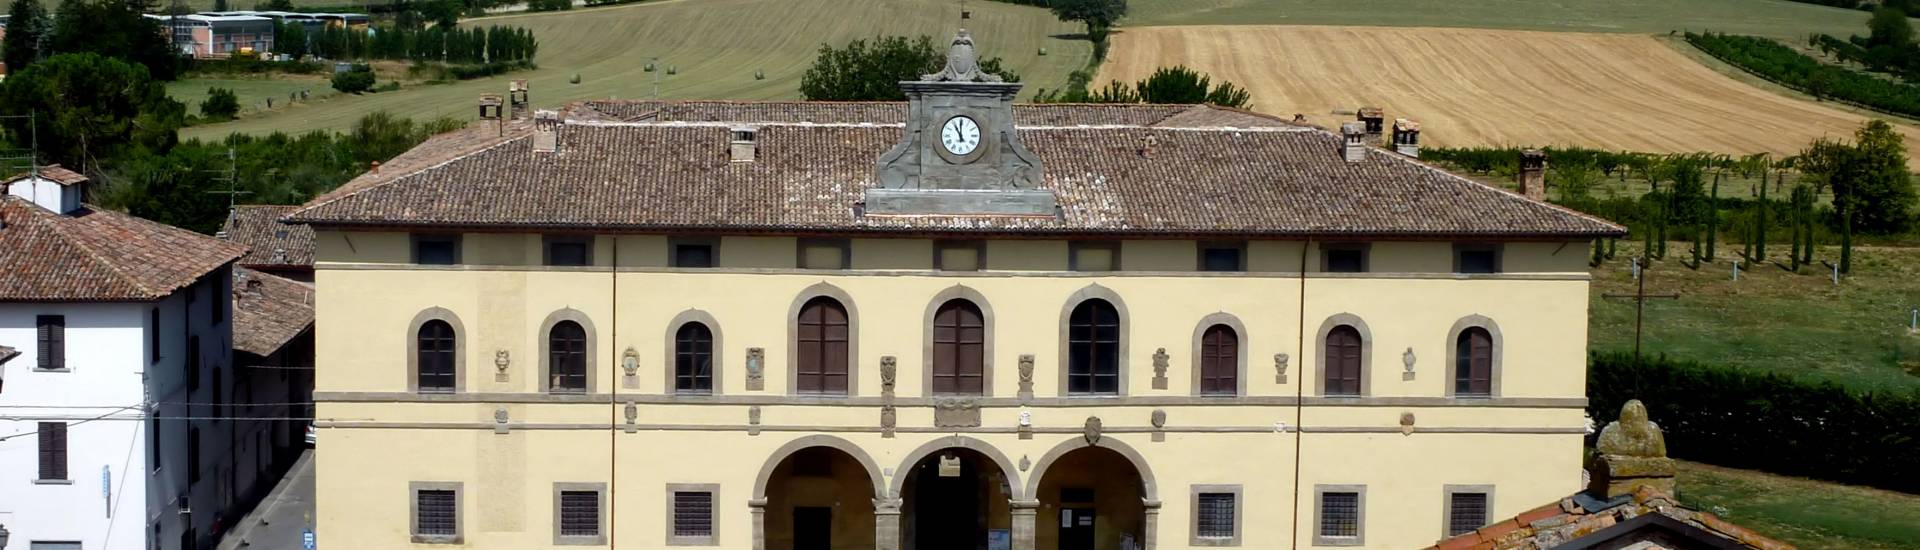 Palazzo dei Commissari e del Pretorio - Terra del Sole - Palazzo Pretorio e panorama foto di: |Battistini| - Pro loco